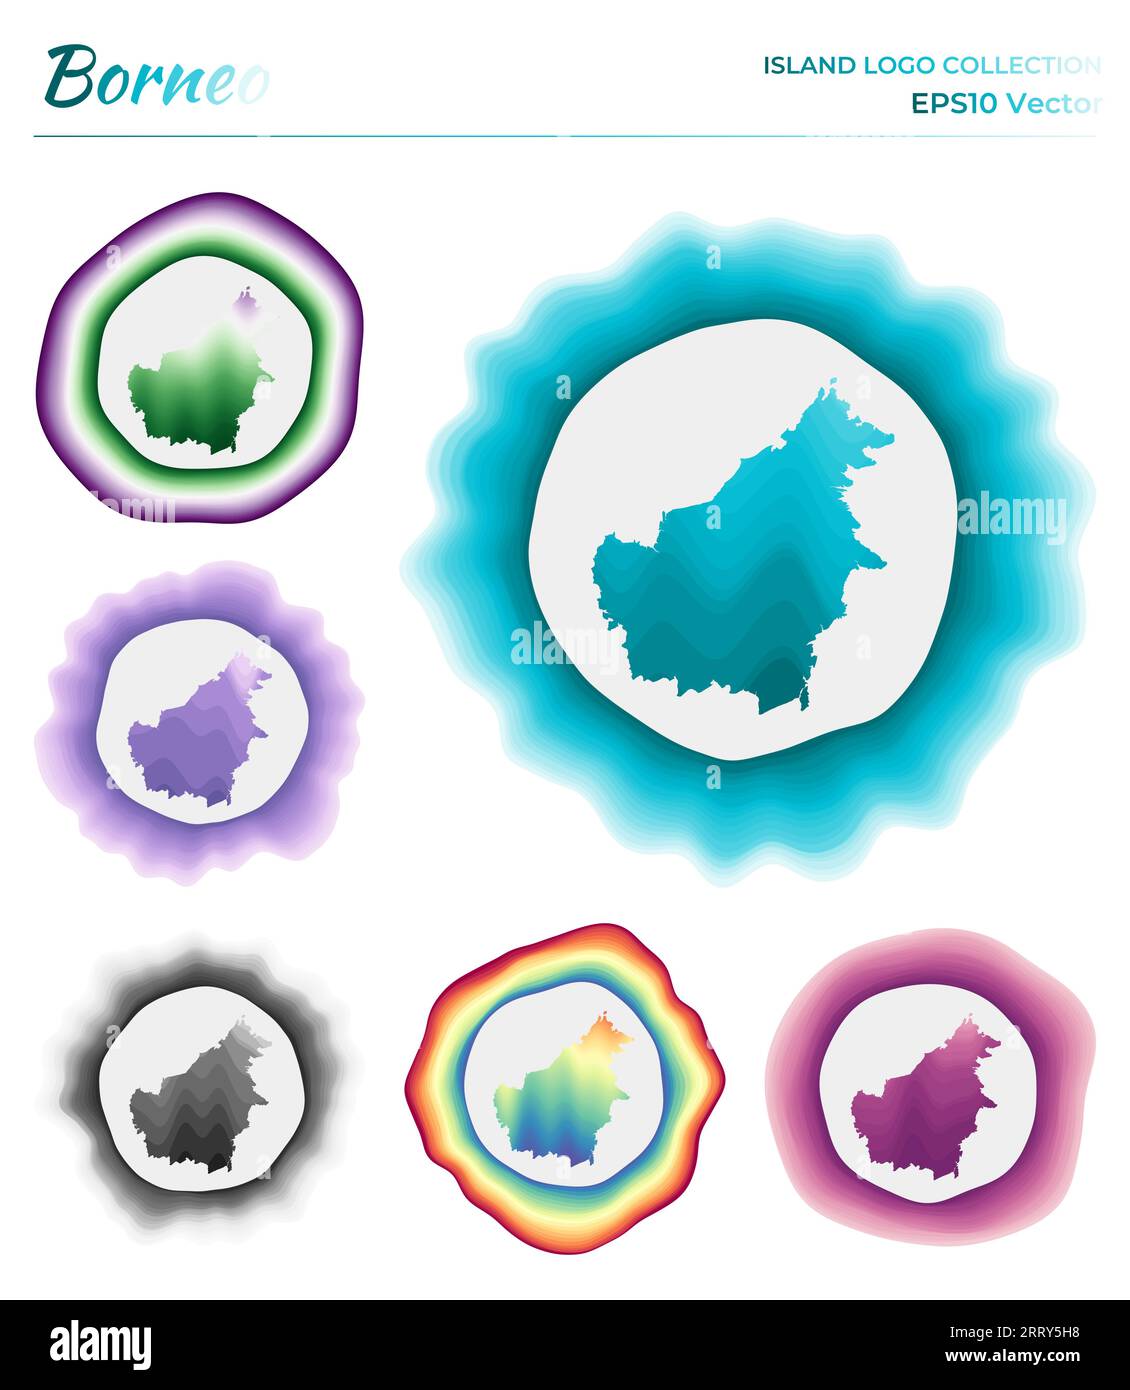 Collezione di logo Borneo. Distintivo colorato dell'isola. I livelli intorno al bordo Borneo hanno la forma. Illustrazione vettoriale. Illustrazione Vettoriale